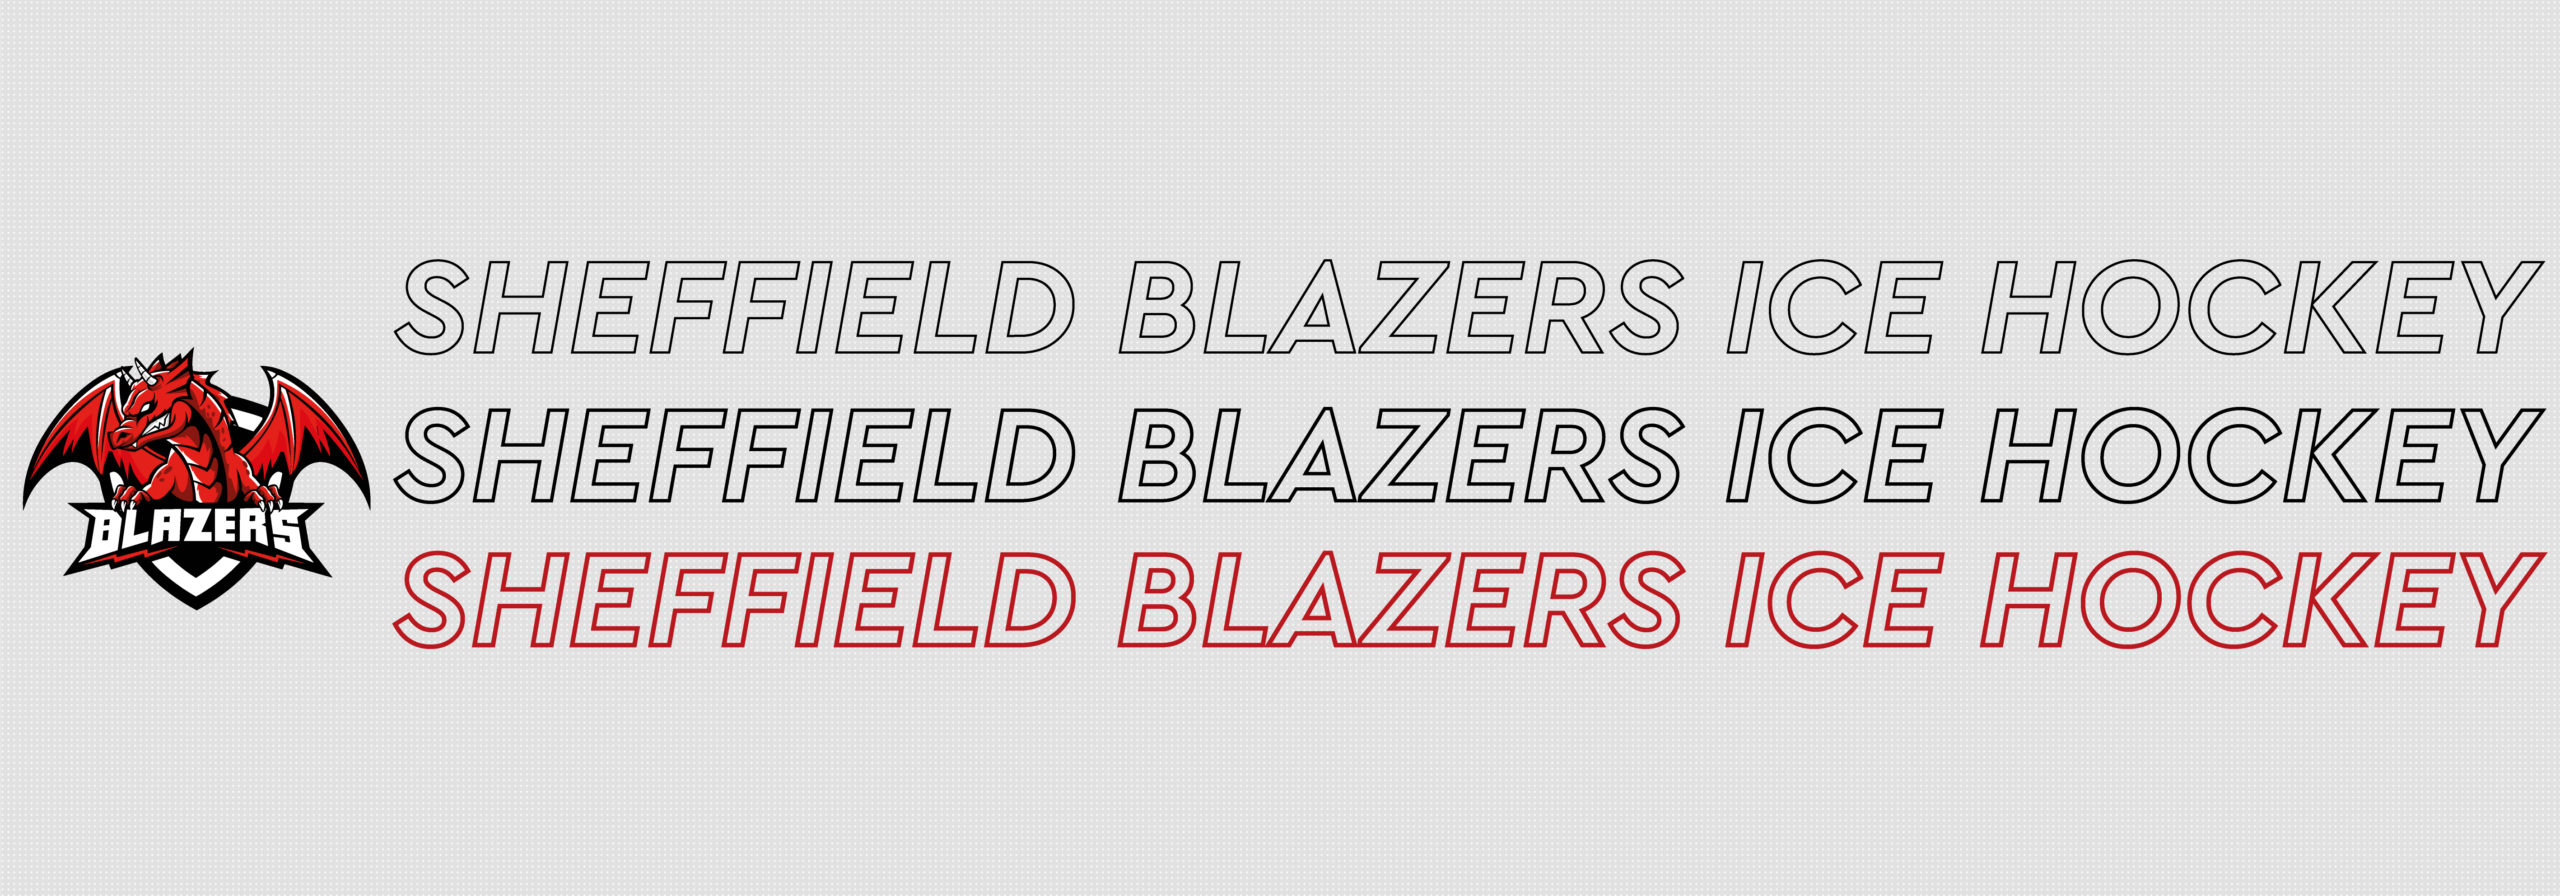 Sheffield Blazers Ice Hockey Club